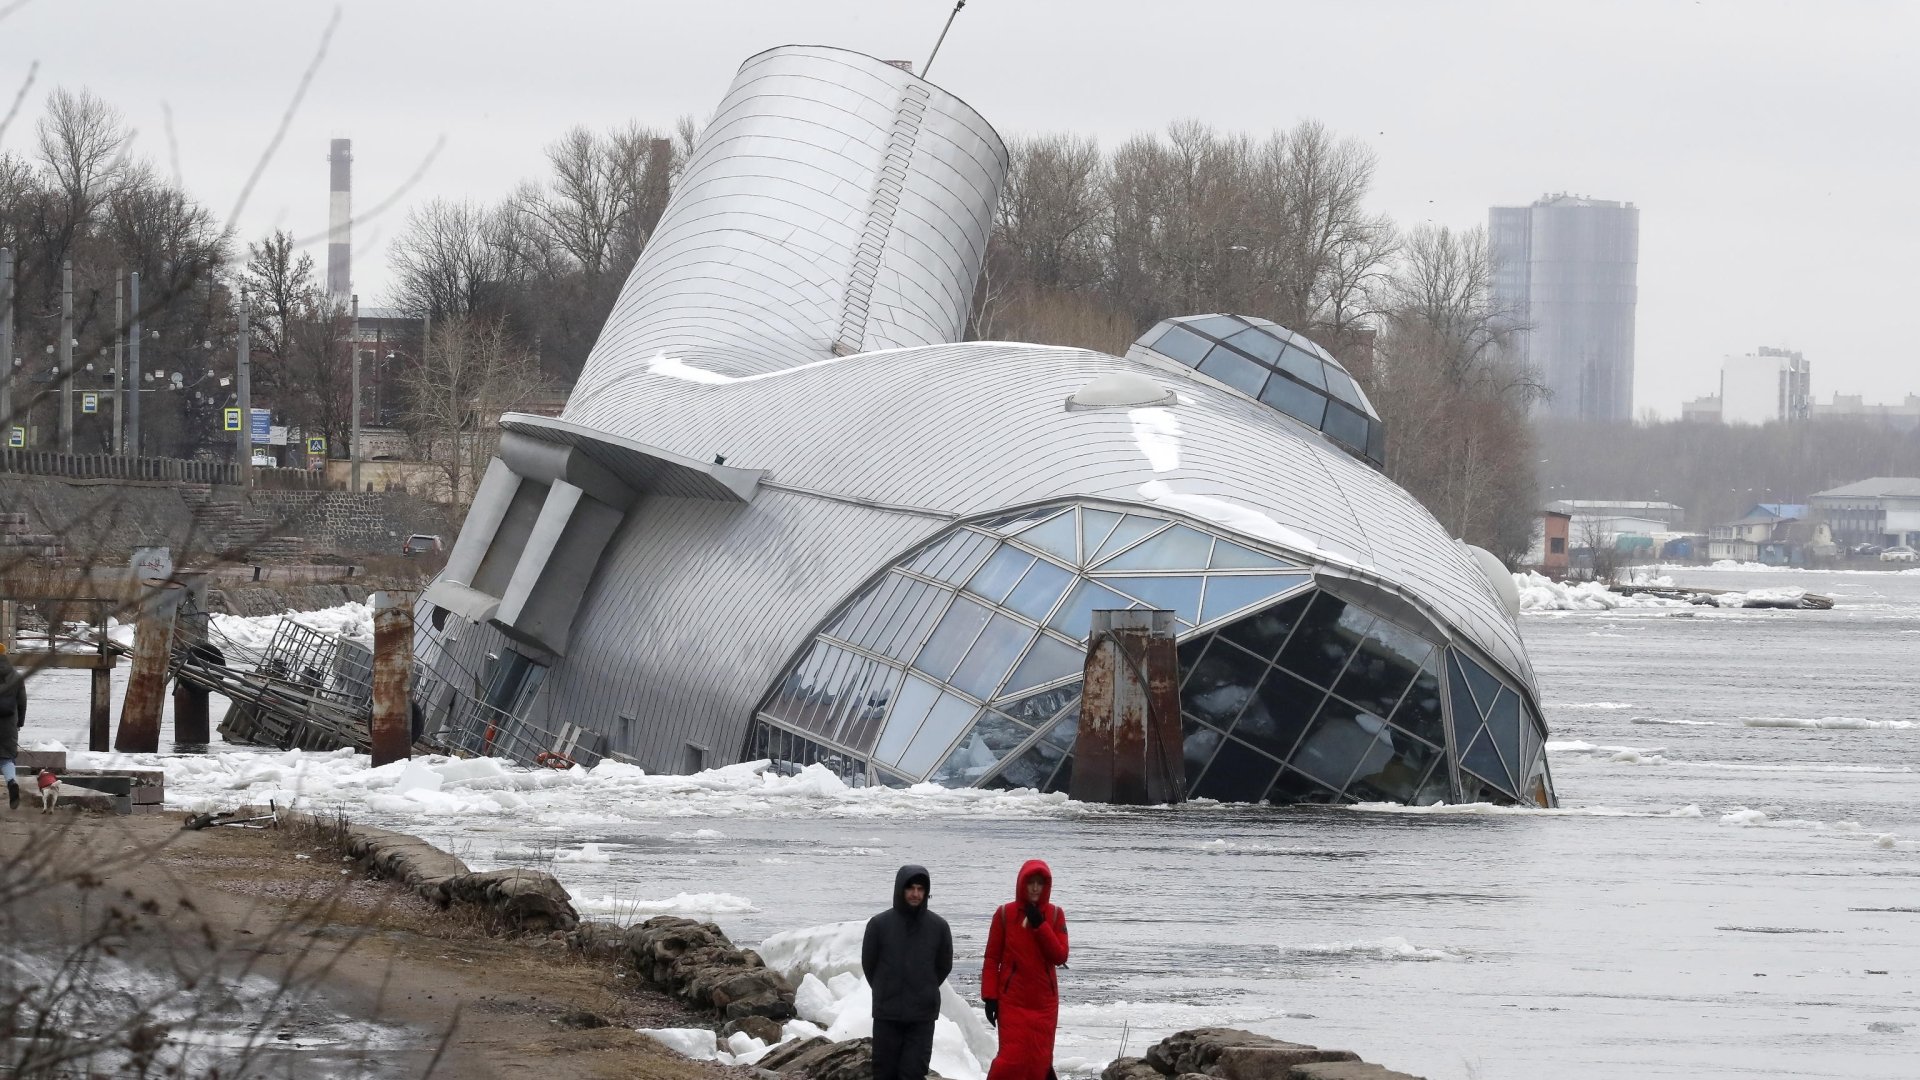 Il sensazionale ristorante galleggiante russo è affondato nel fiume ➤ Главное.net